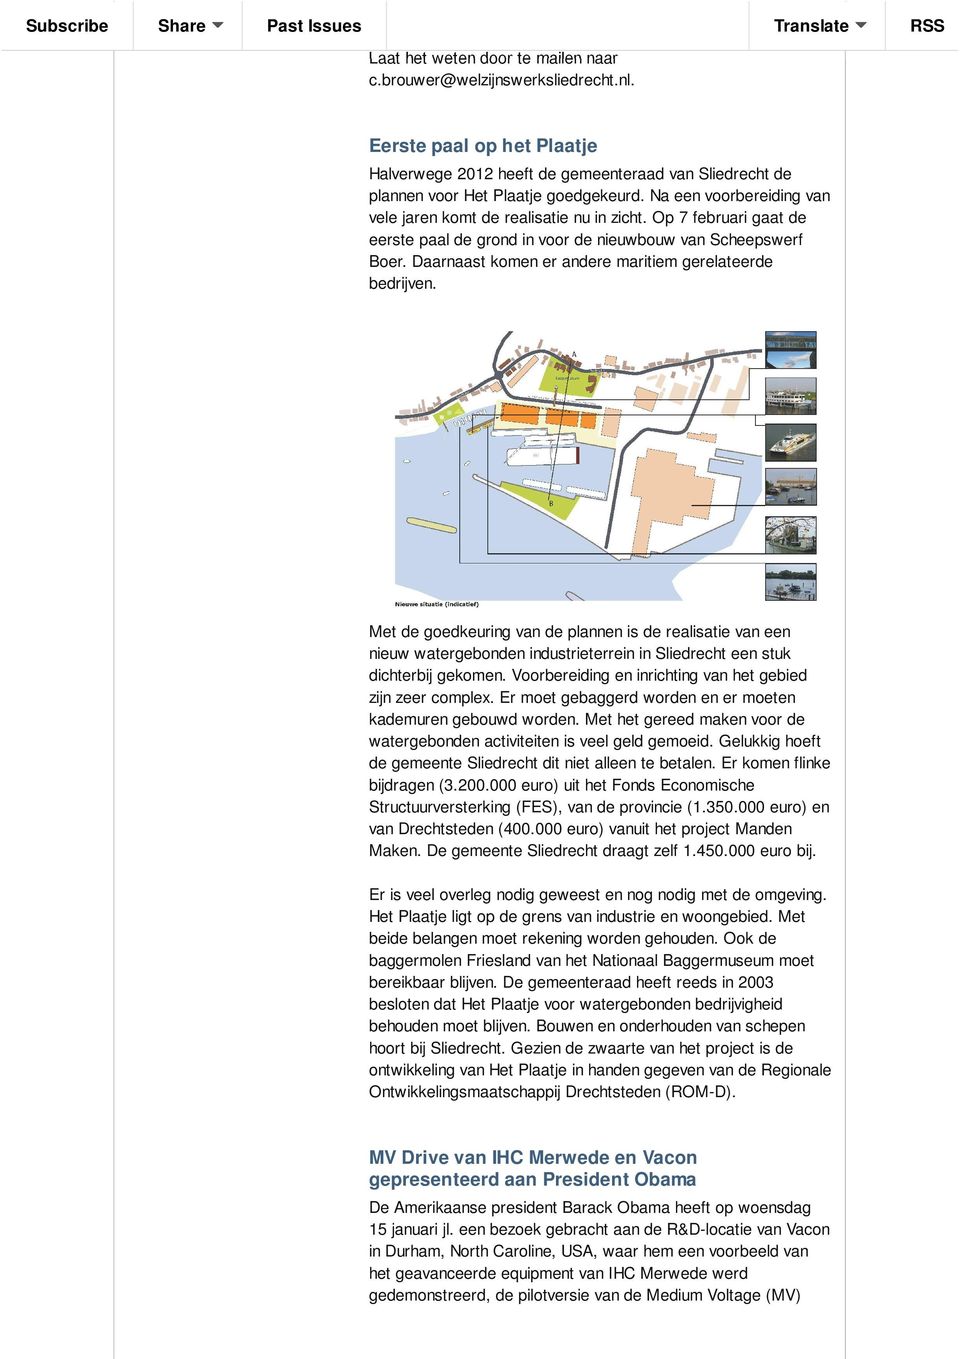 Daarnaast komen er andere maritiem gerelateerde bedrijven. Met de goedkeuring van de plannen is de realisatie van een nieuw watergebonden industrieterrein in Sliedrecht een stuk dichterbij gekomen.